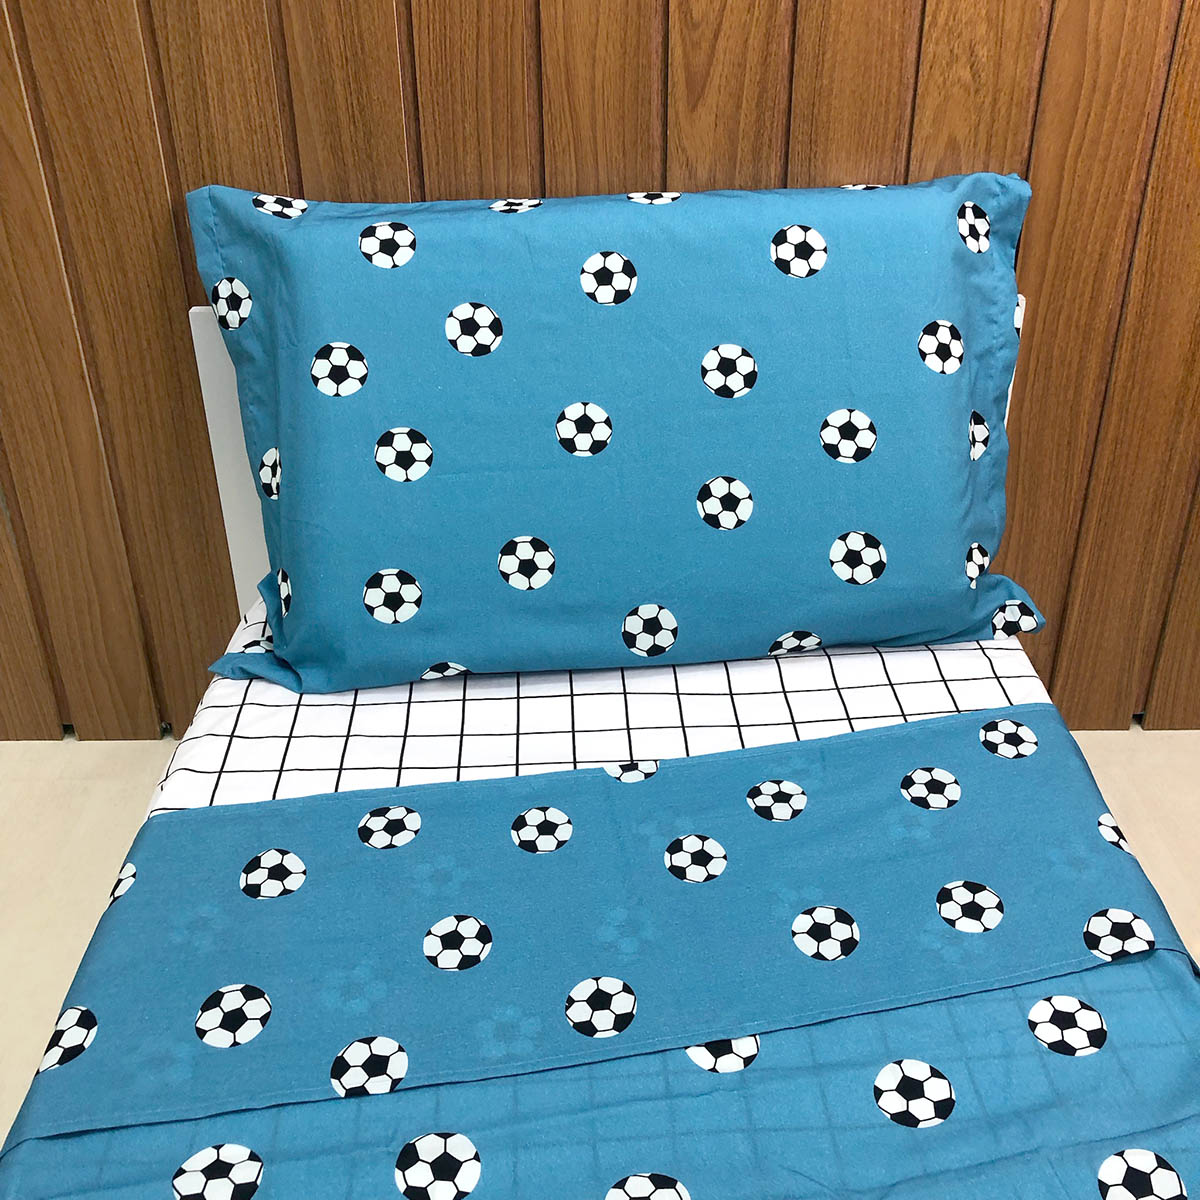 Jogo de cama infantil com bolas de futebol com fundo azul na fronha e lençol de cobrir. O lençol de elástico é quadriculado preto e branco.